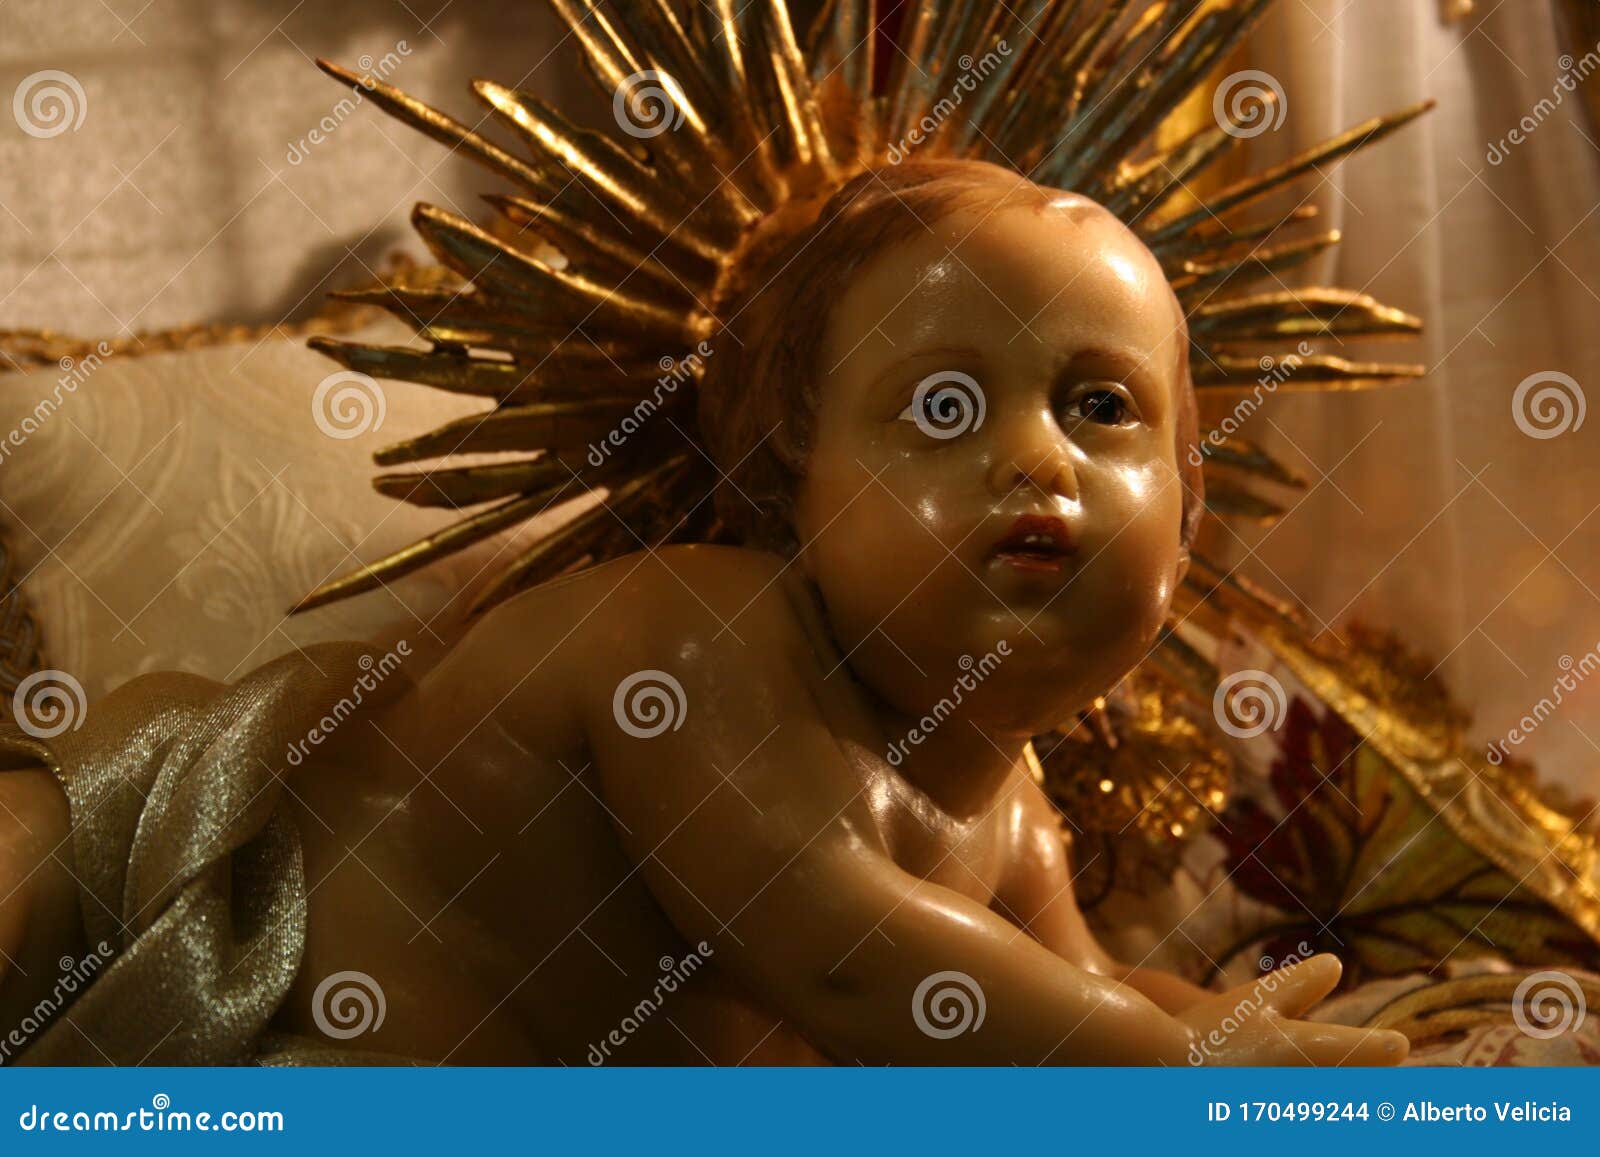 figure of baby jesus